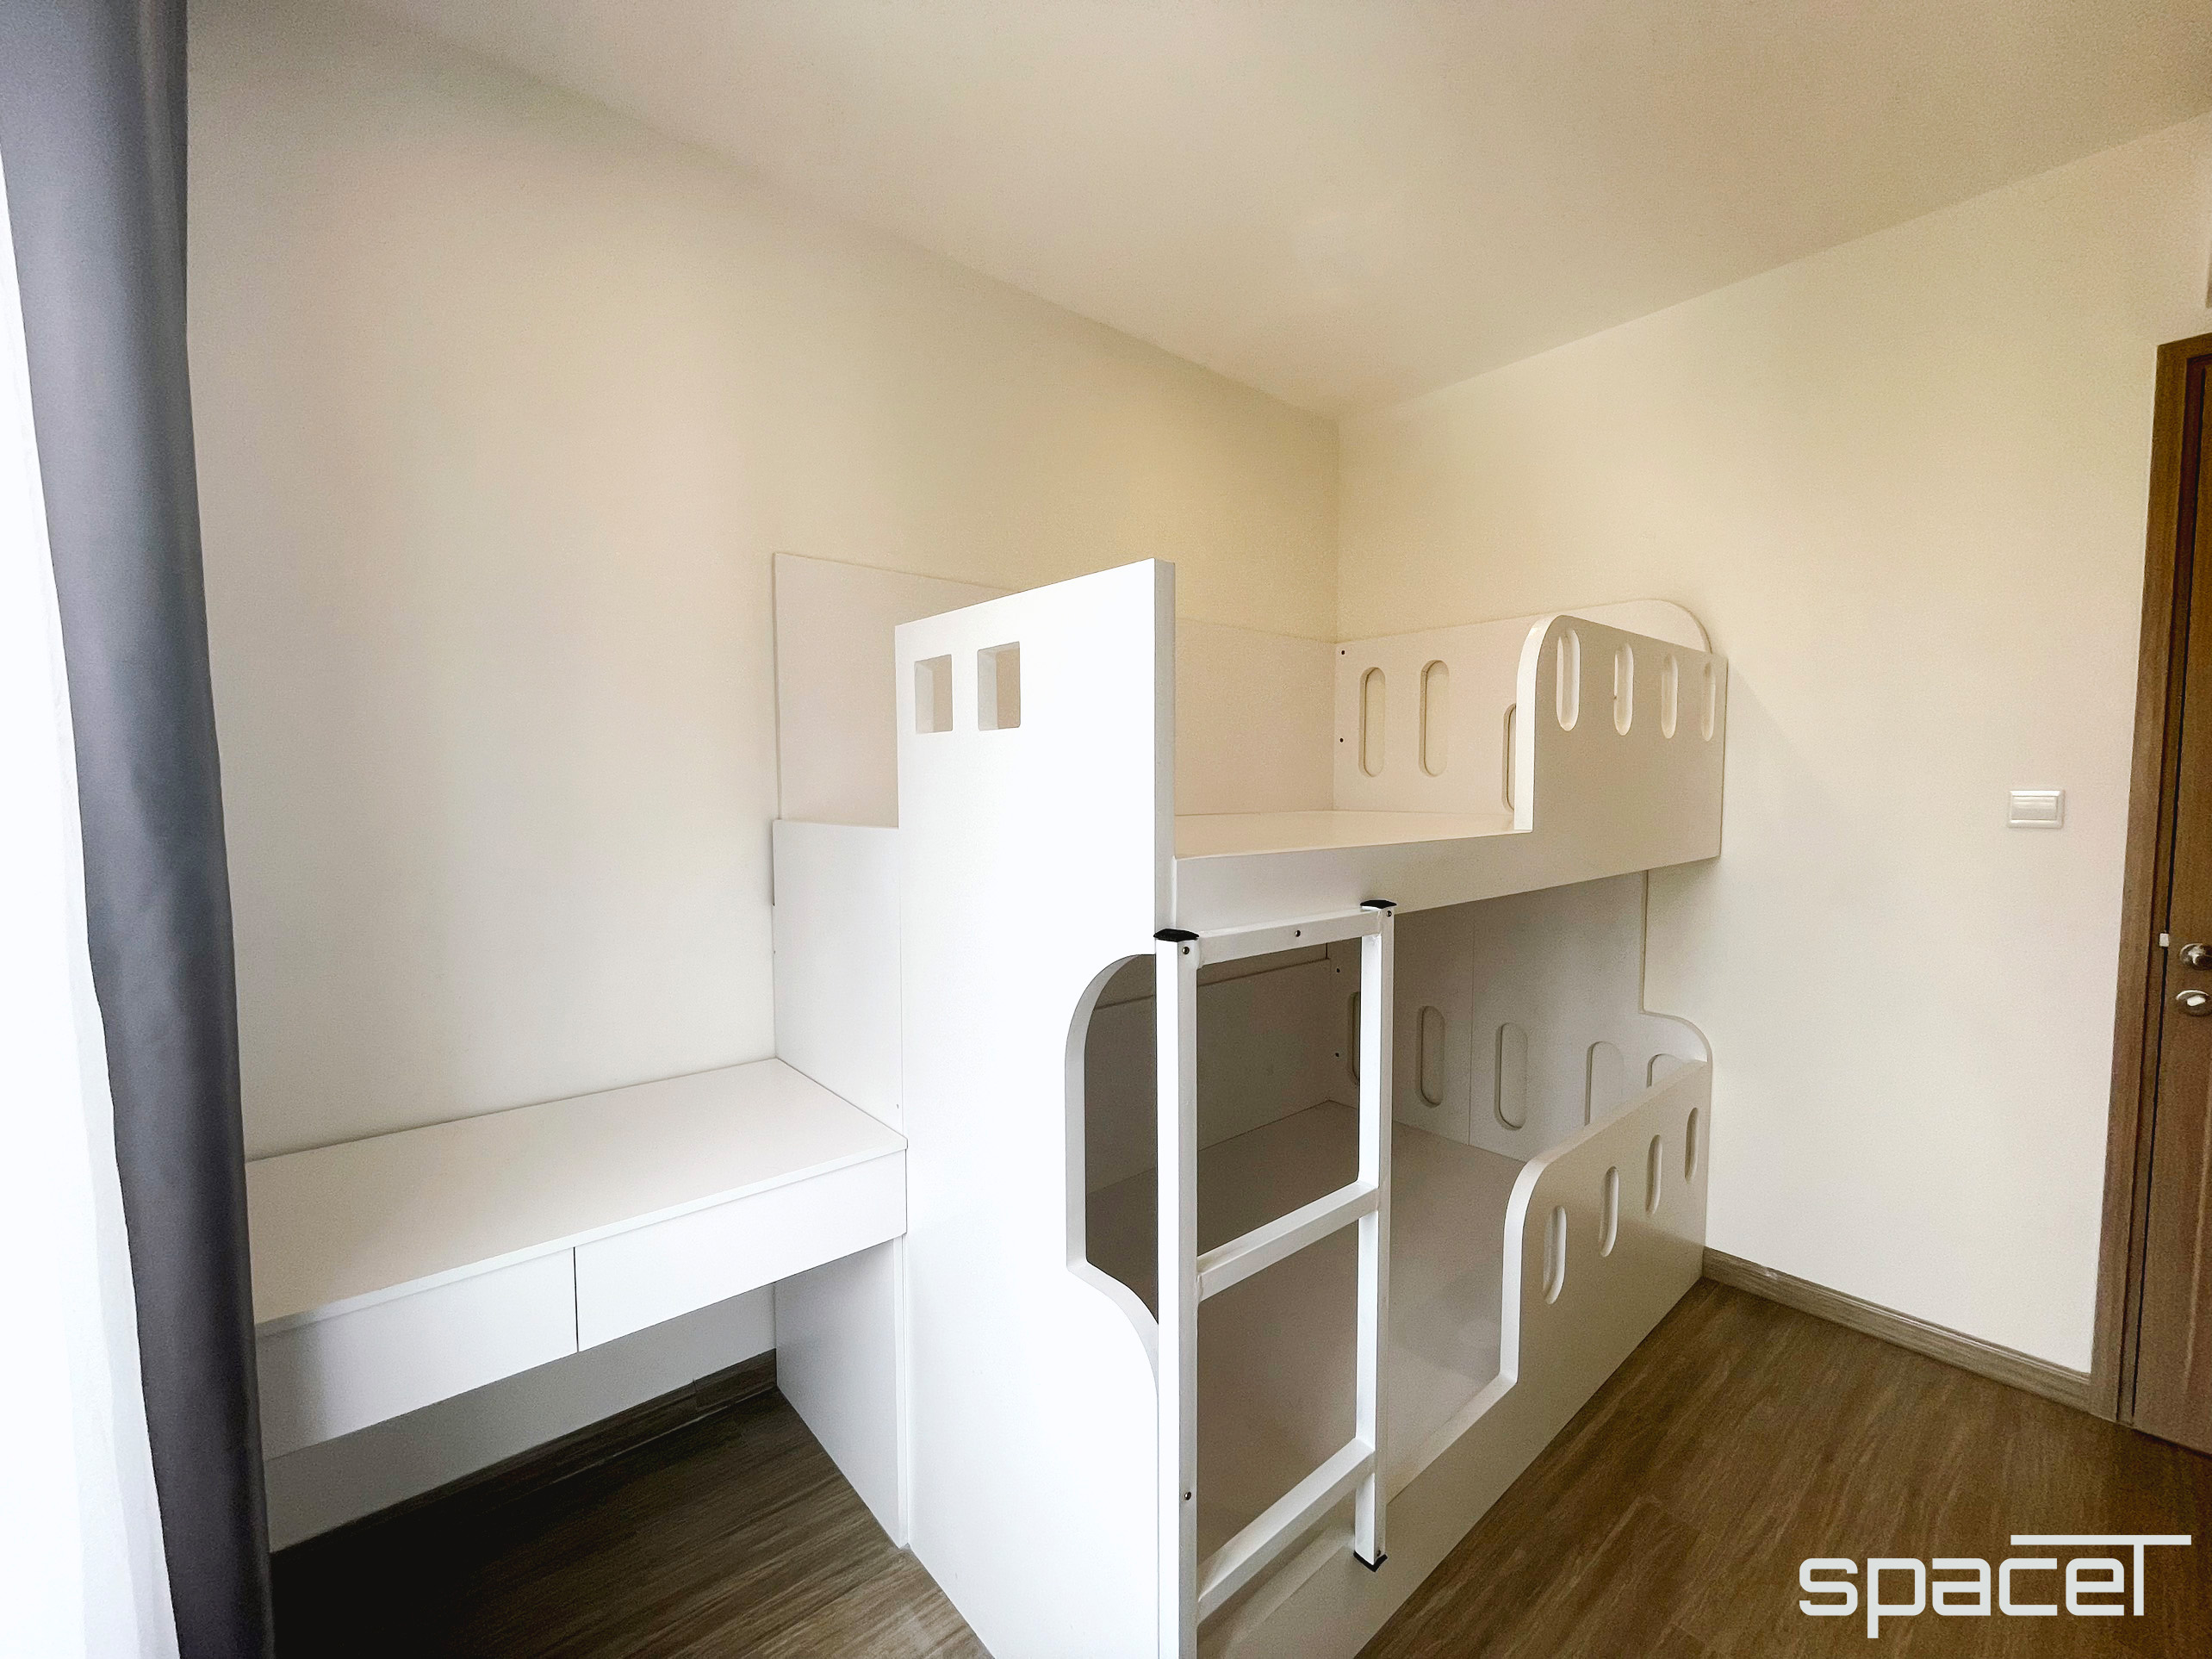 Phòng ngủ cho bé, phong cách Bắc Âu Scandinavian, hoàn thiện nội thất, căn hộ The Origami Vinhomes Quận 9